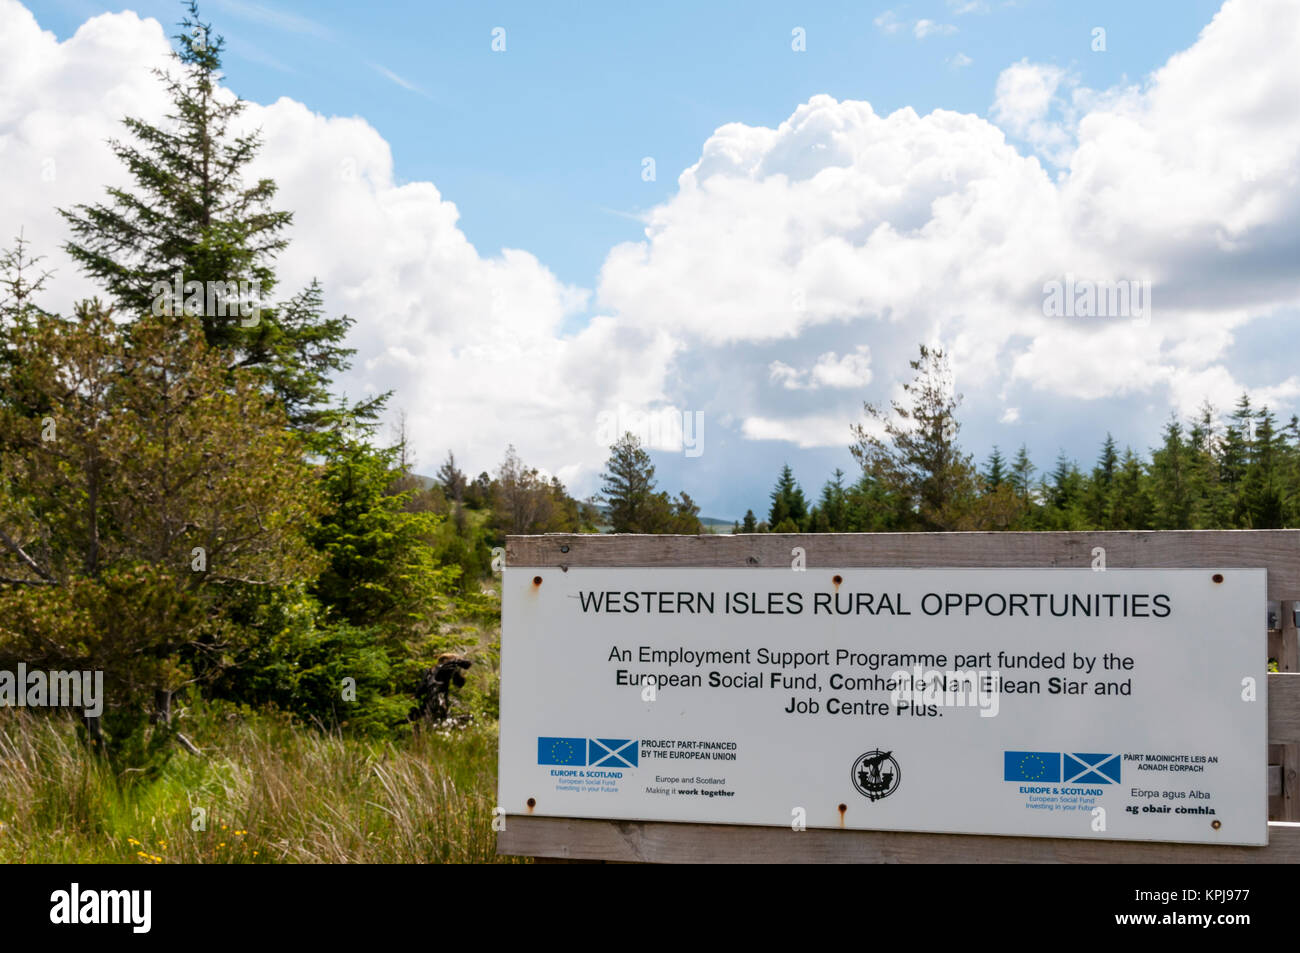 Western Isles Rural Opportunities firmar a Aline Comunidad bosque en la isla de Lewis muestra la insignia de la UE. Foto de stock